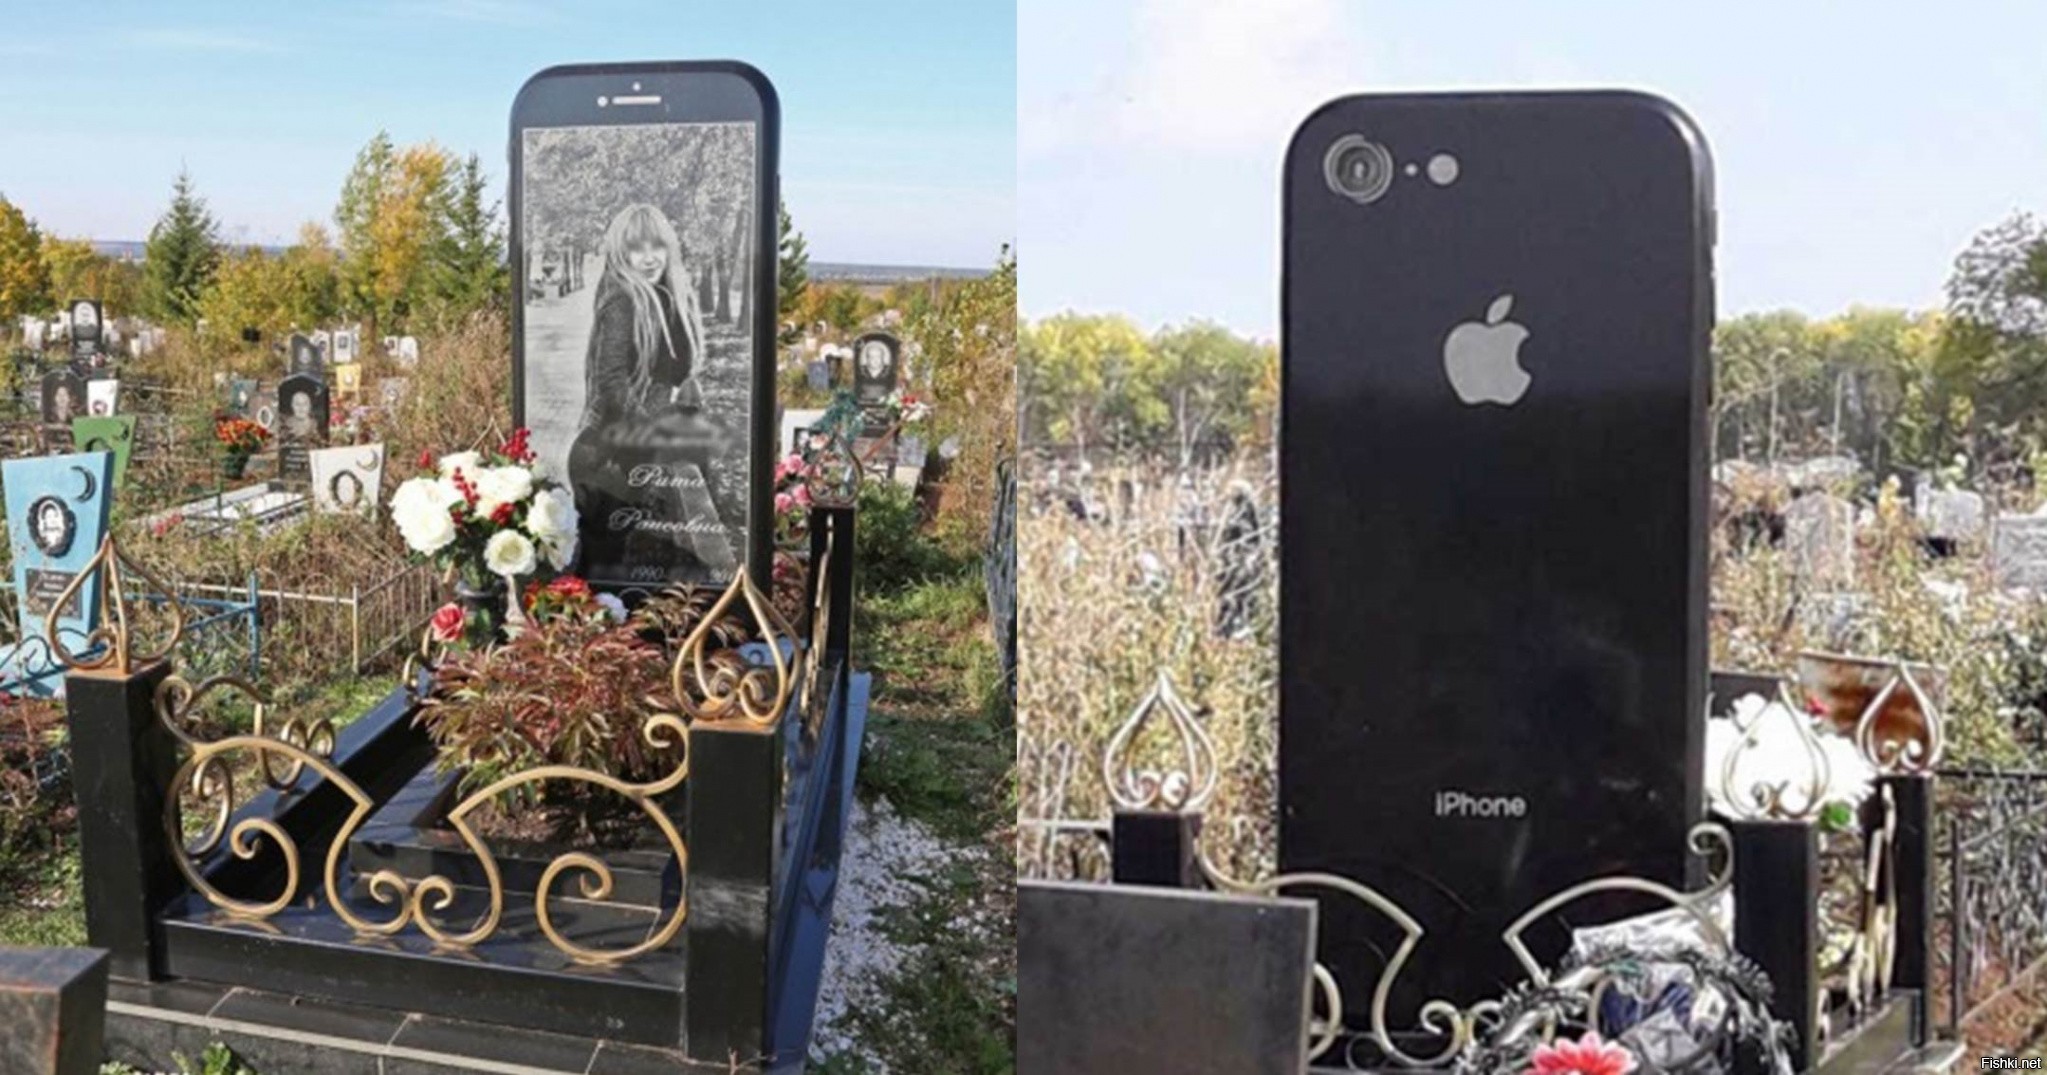 Надгробие в виде айфона